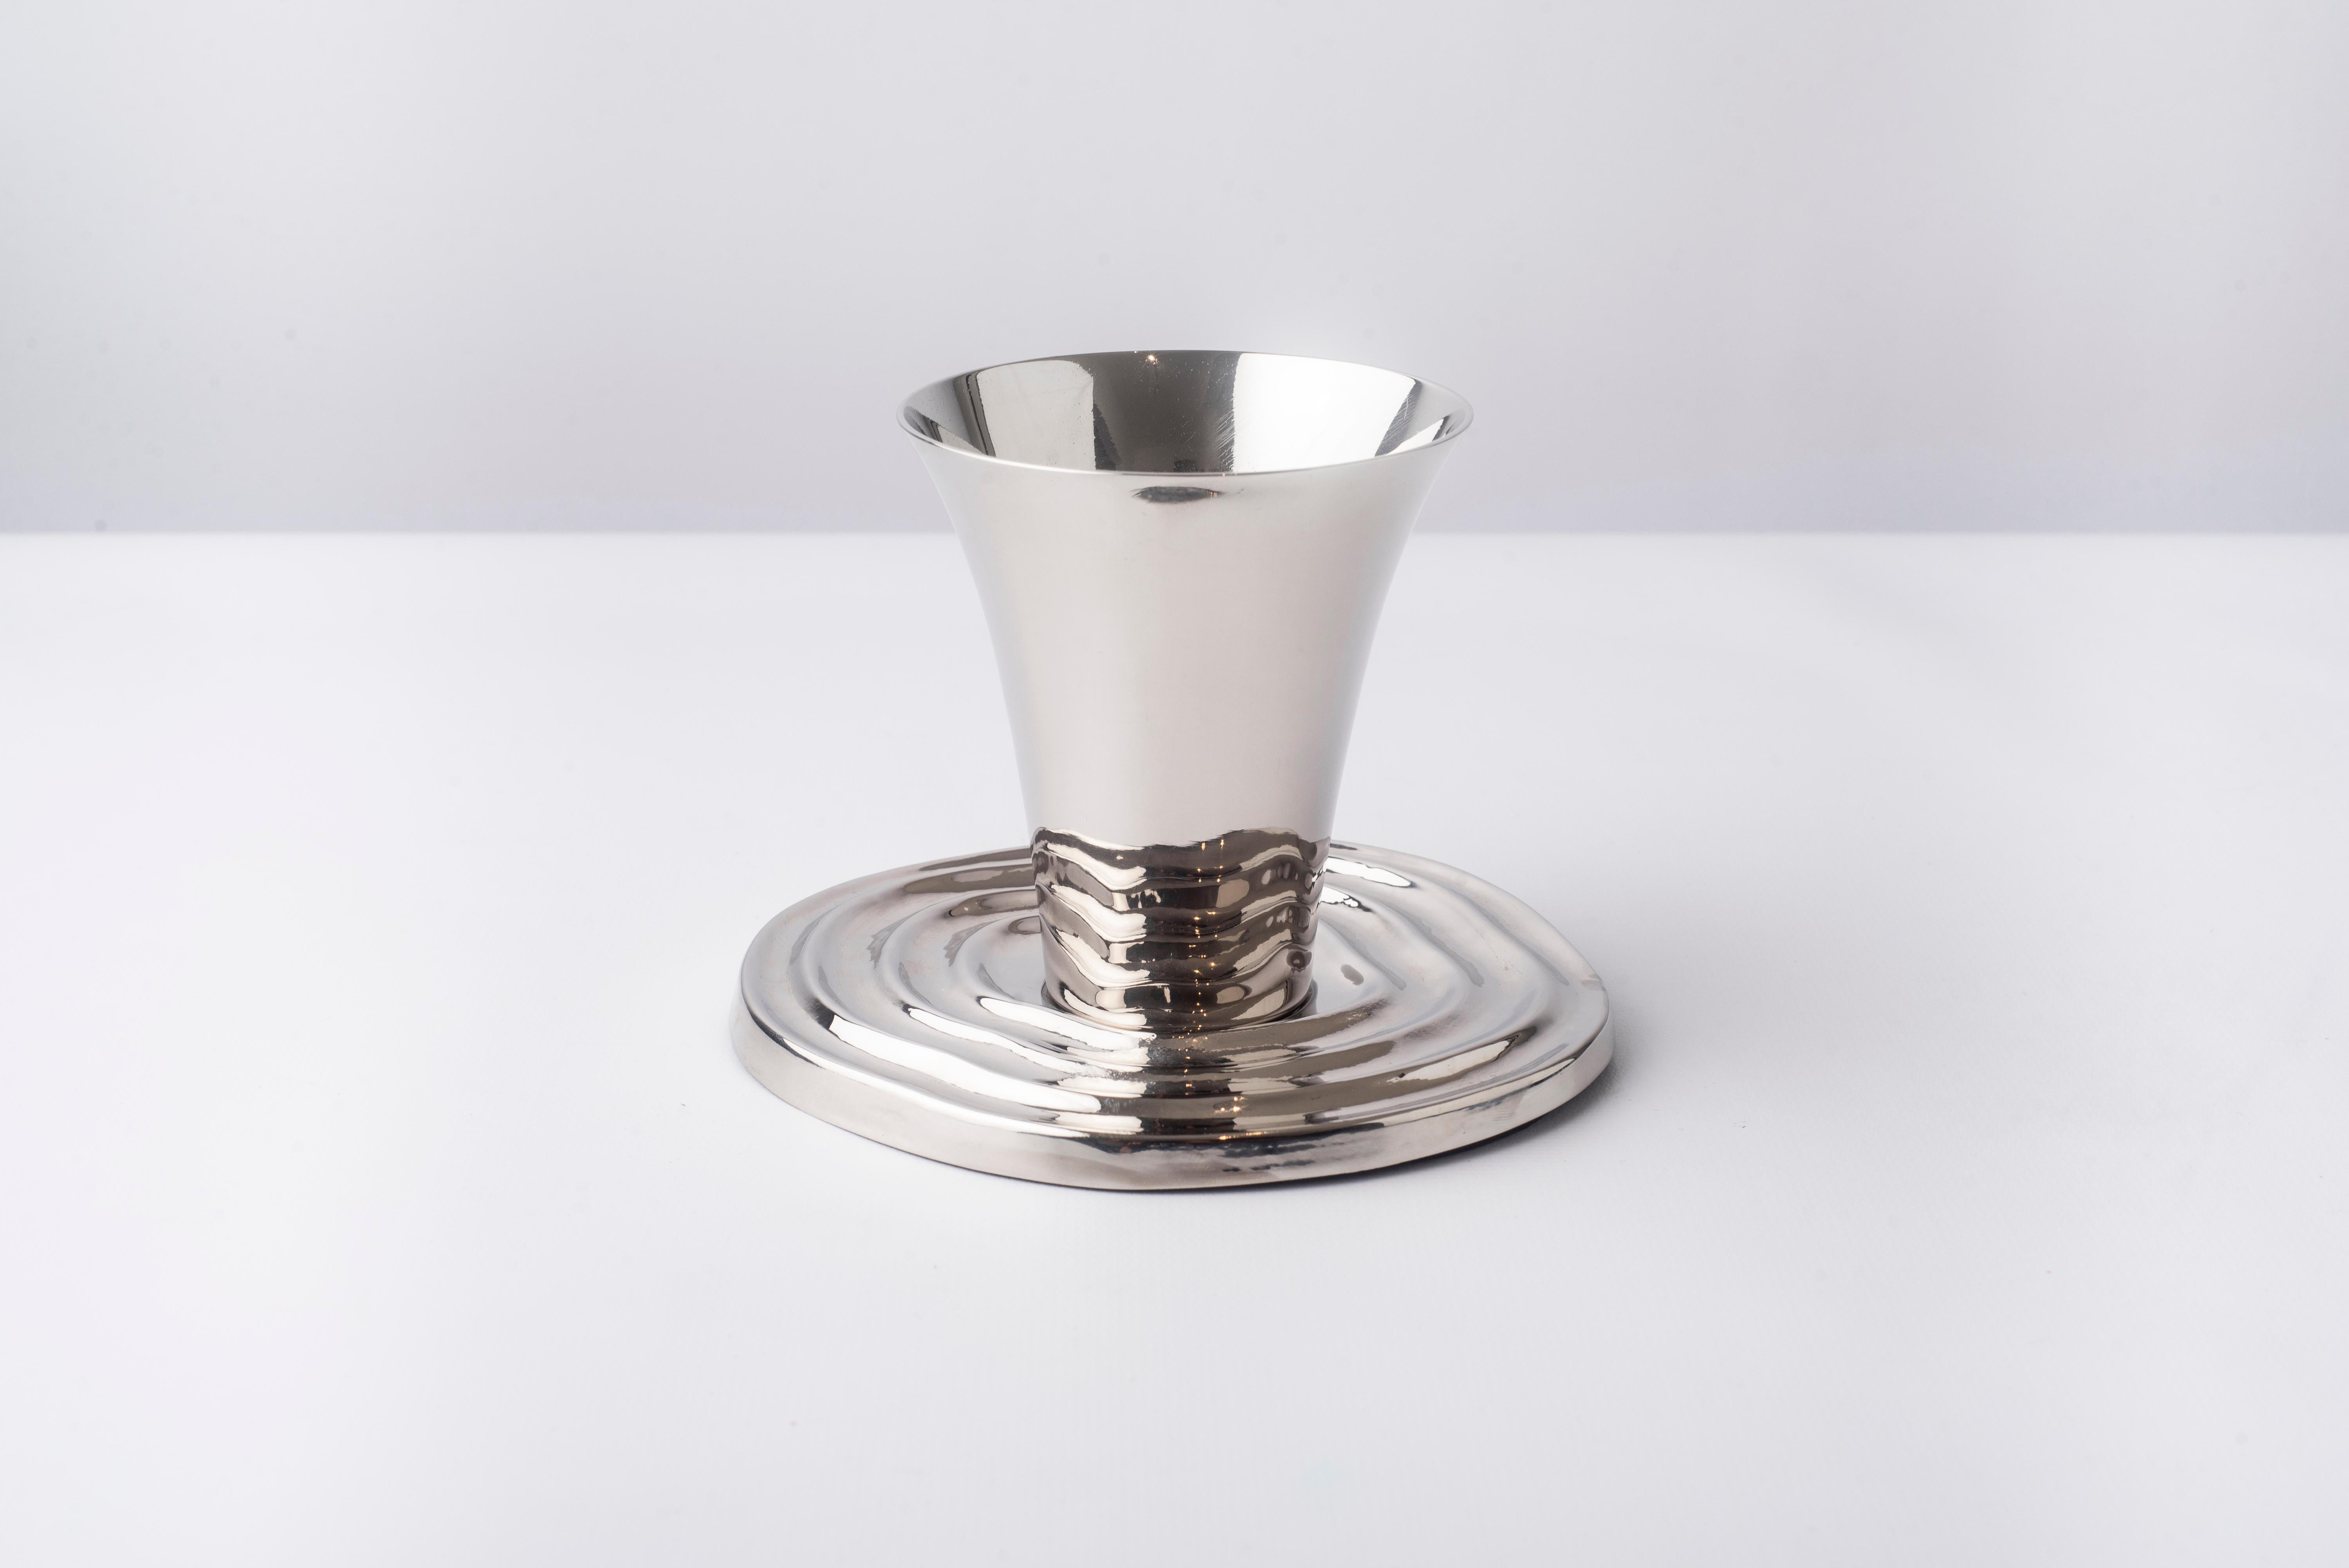 Overflow Hand-Spun Nickel-Plated Brass Kiddush Cup & Saucer 2